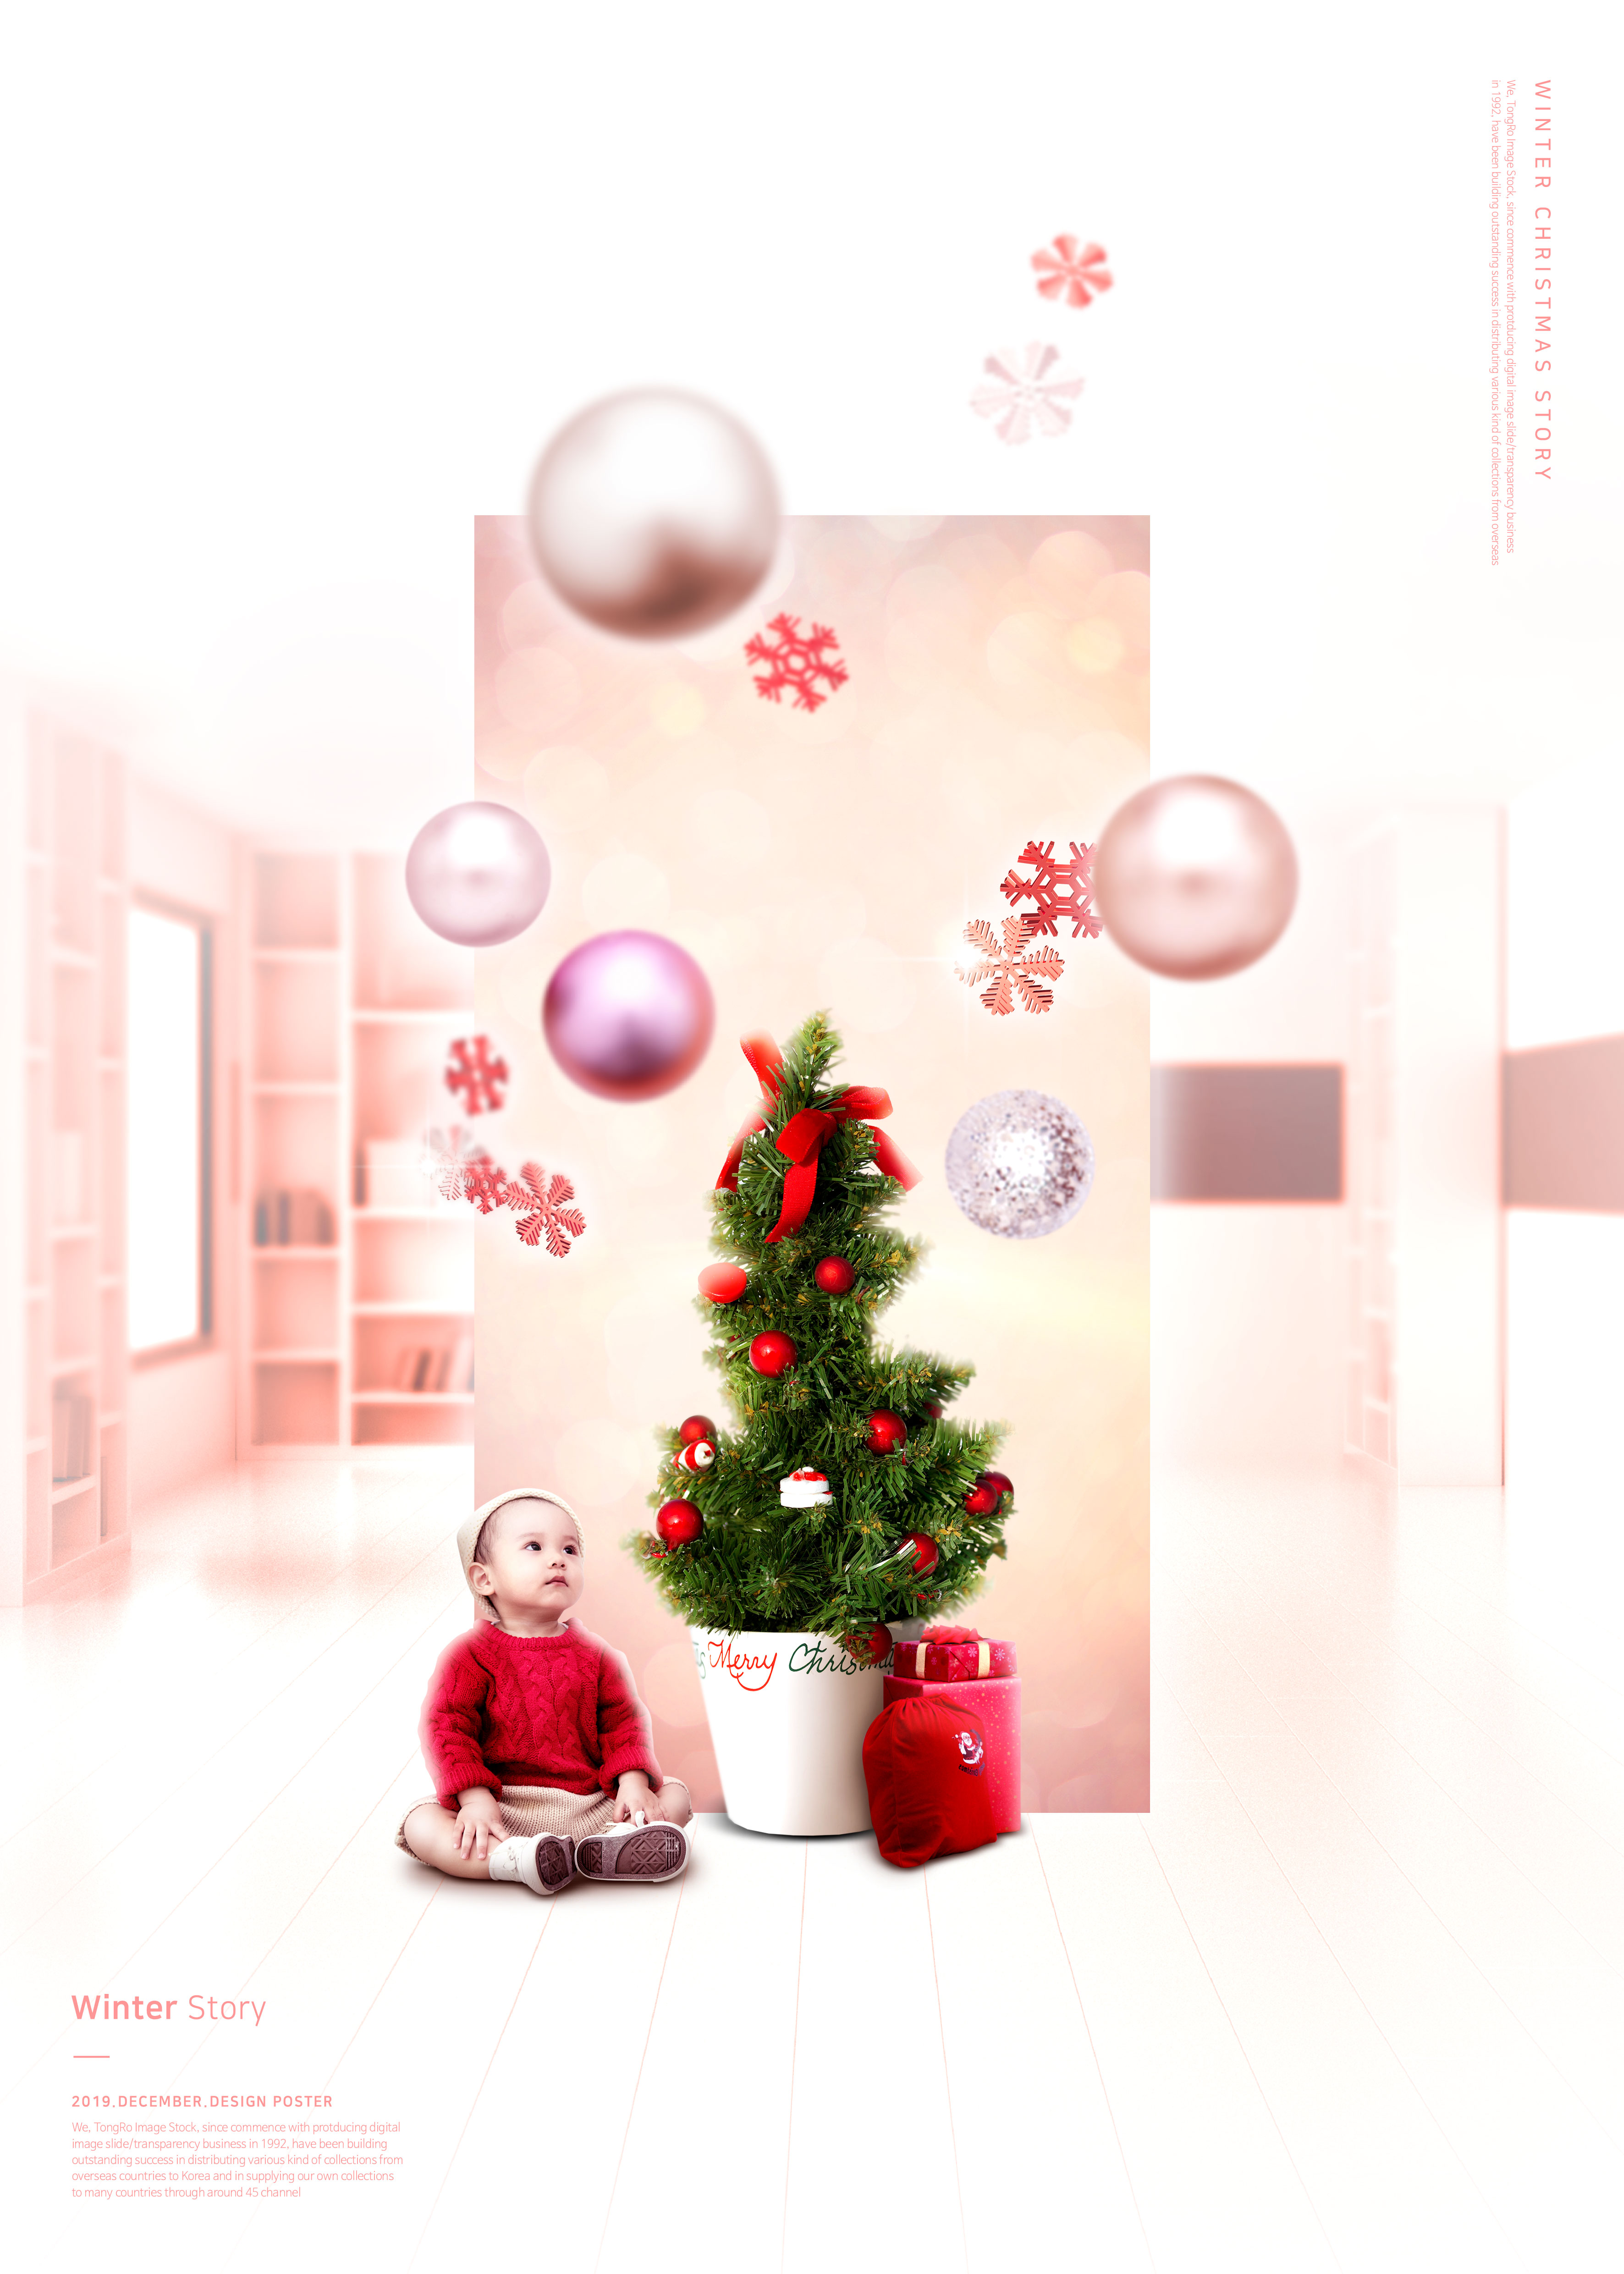 冬季圣诞主题海报/贺卡设计psd素材插图